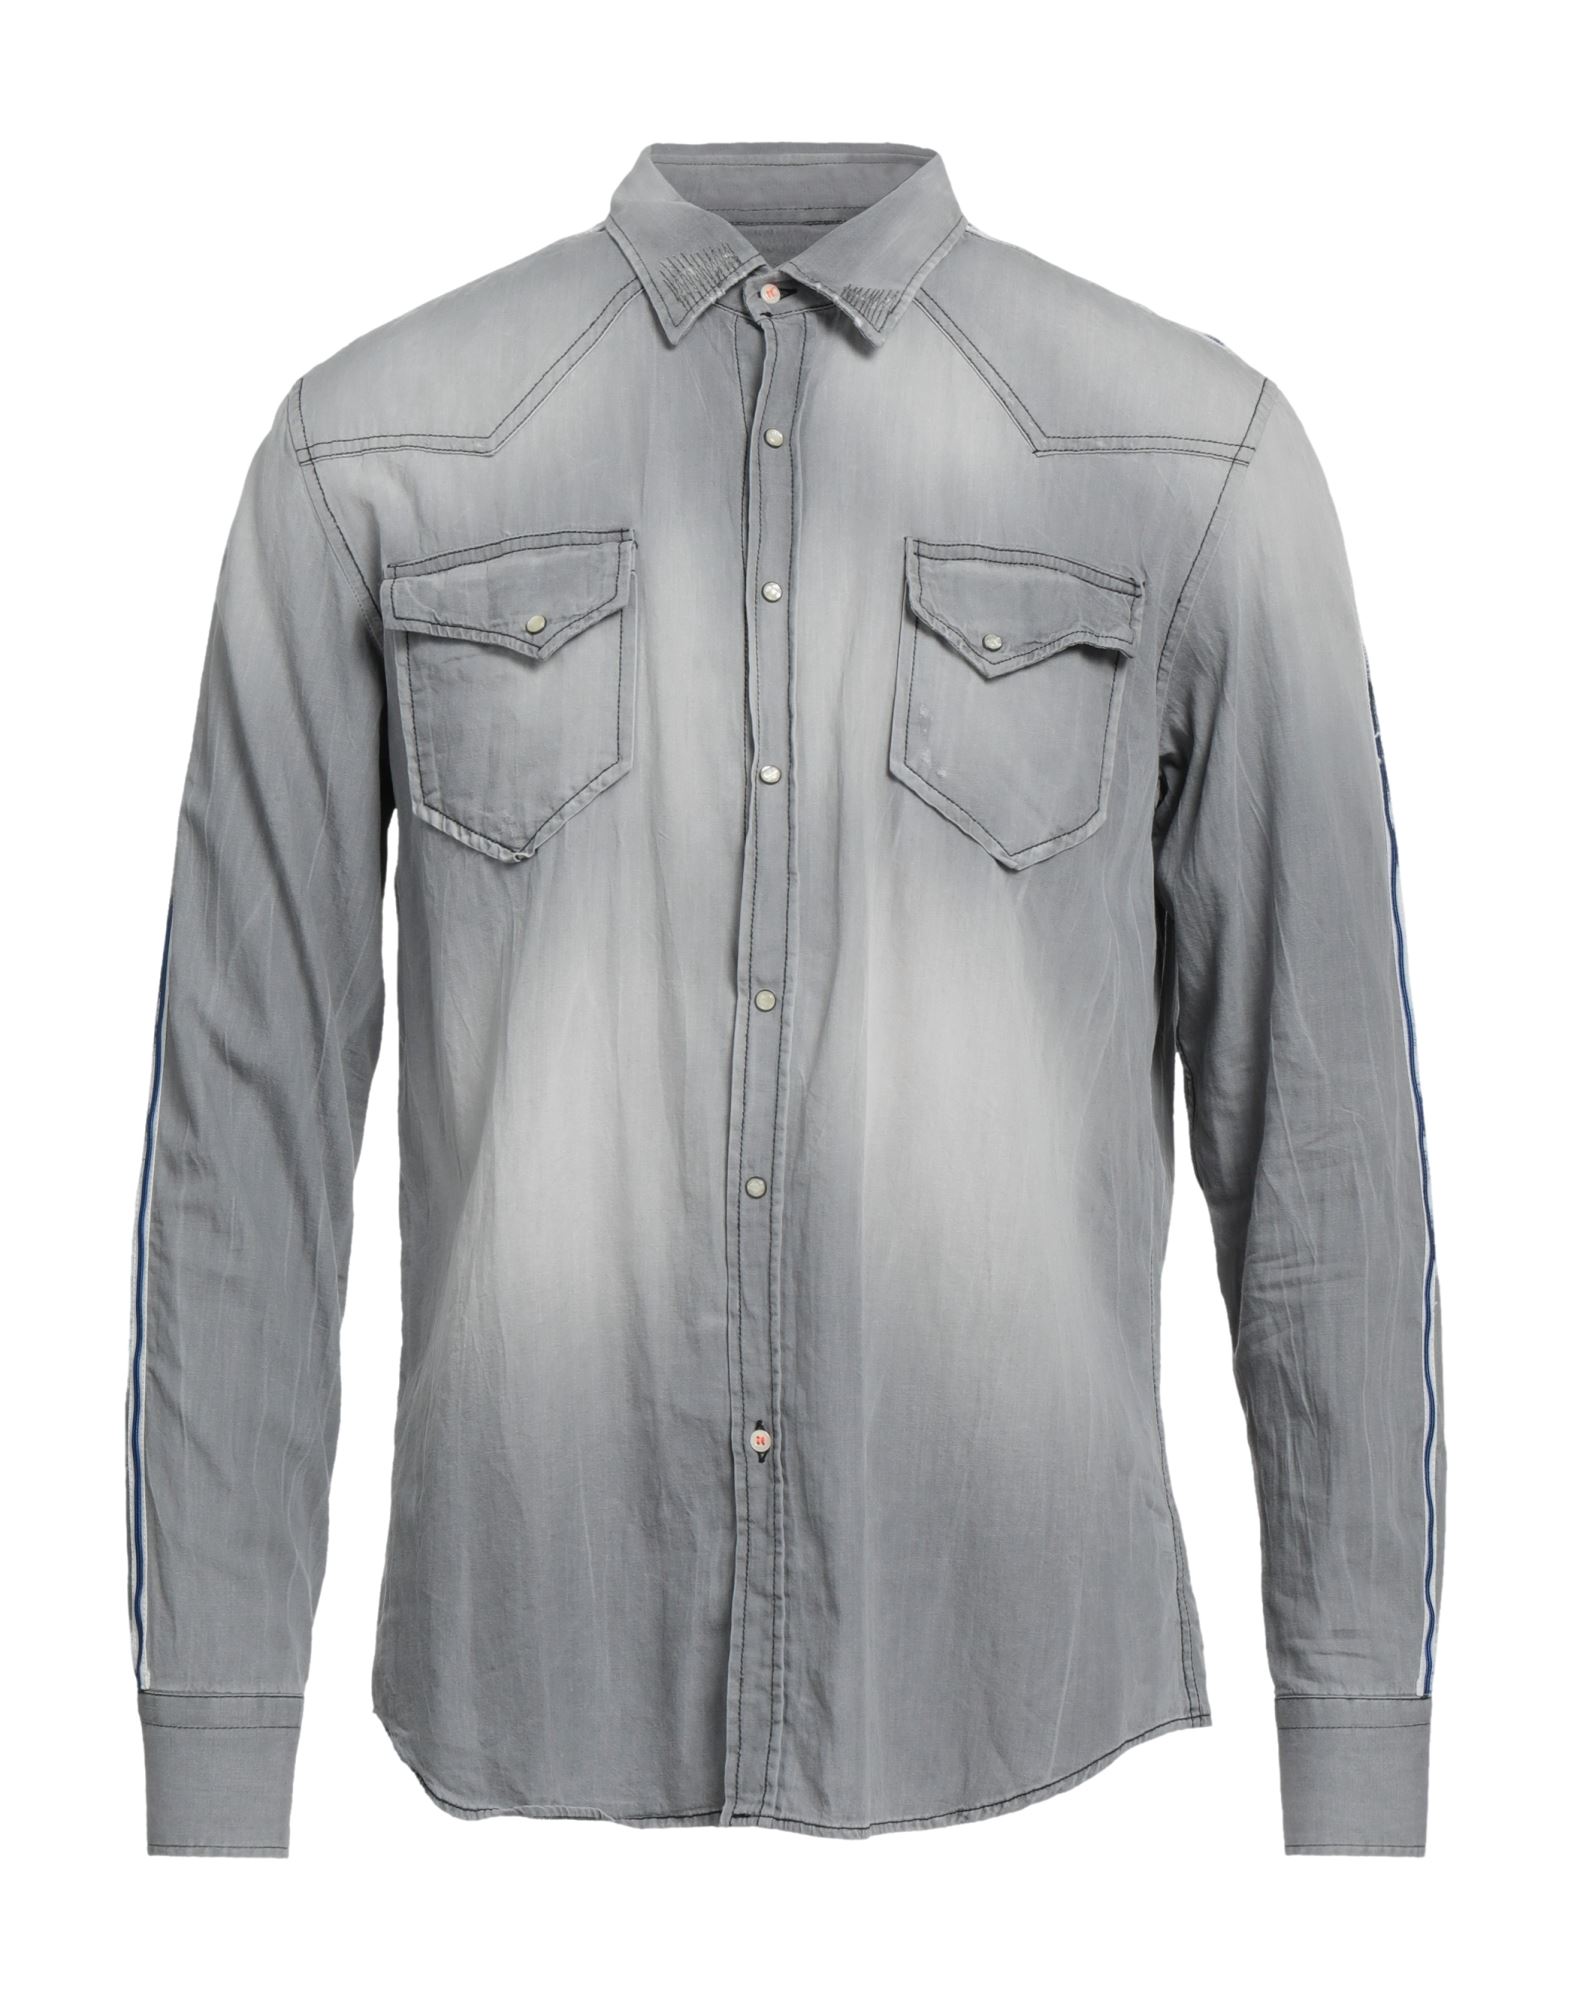 Pmds Premium Mood Denim Superior Denim Shirts In Grey